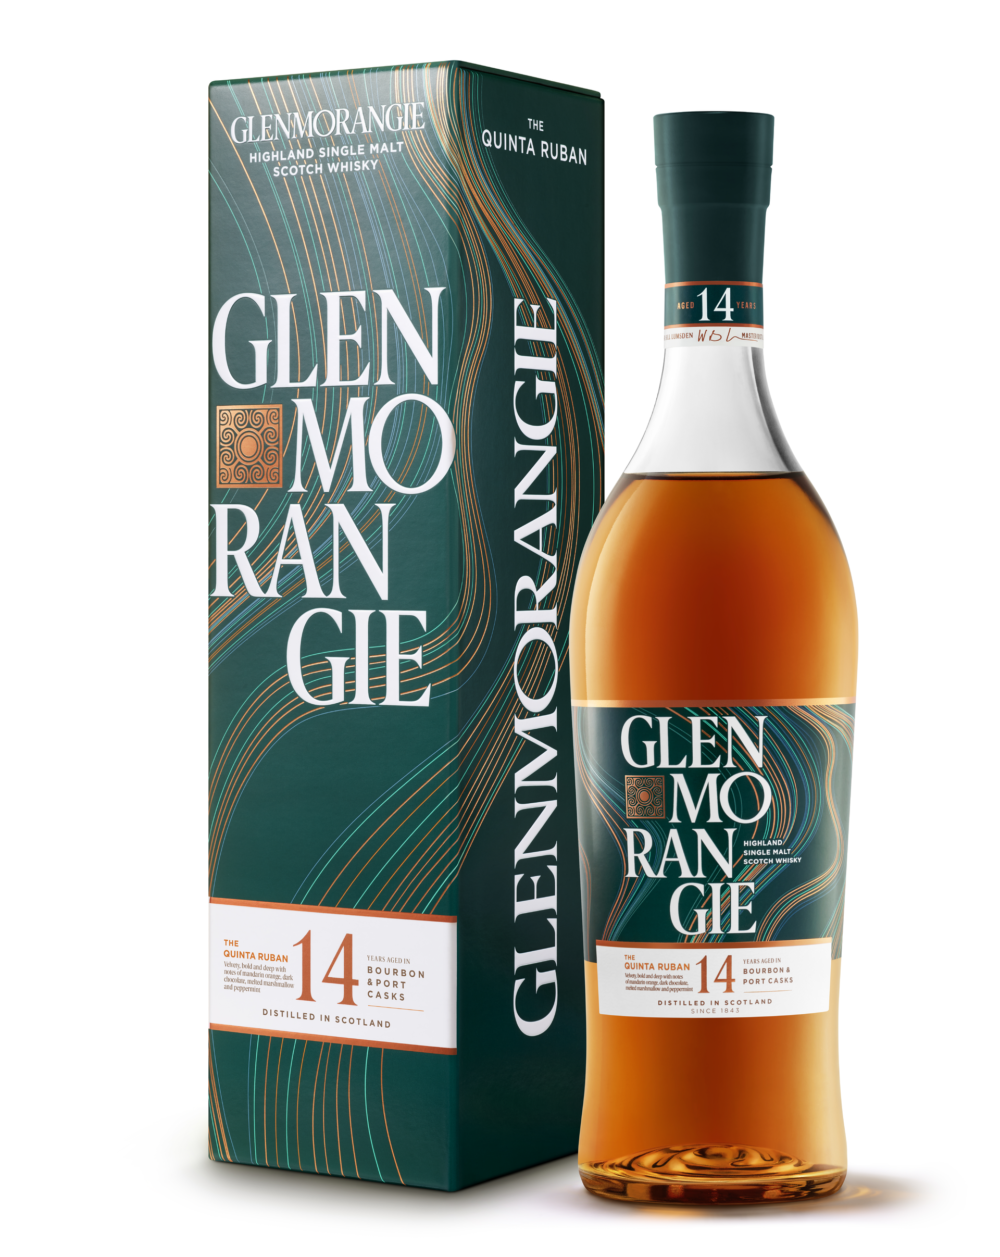 Glenmorangie Quinta Ruban 14 YO — szkocka whisky single malt z regionu Highlands, butelka 700 ml, pudełko.